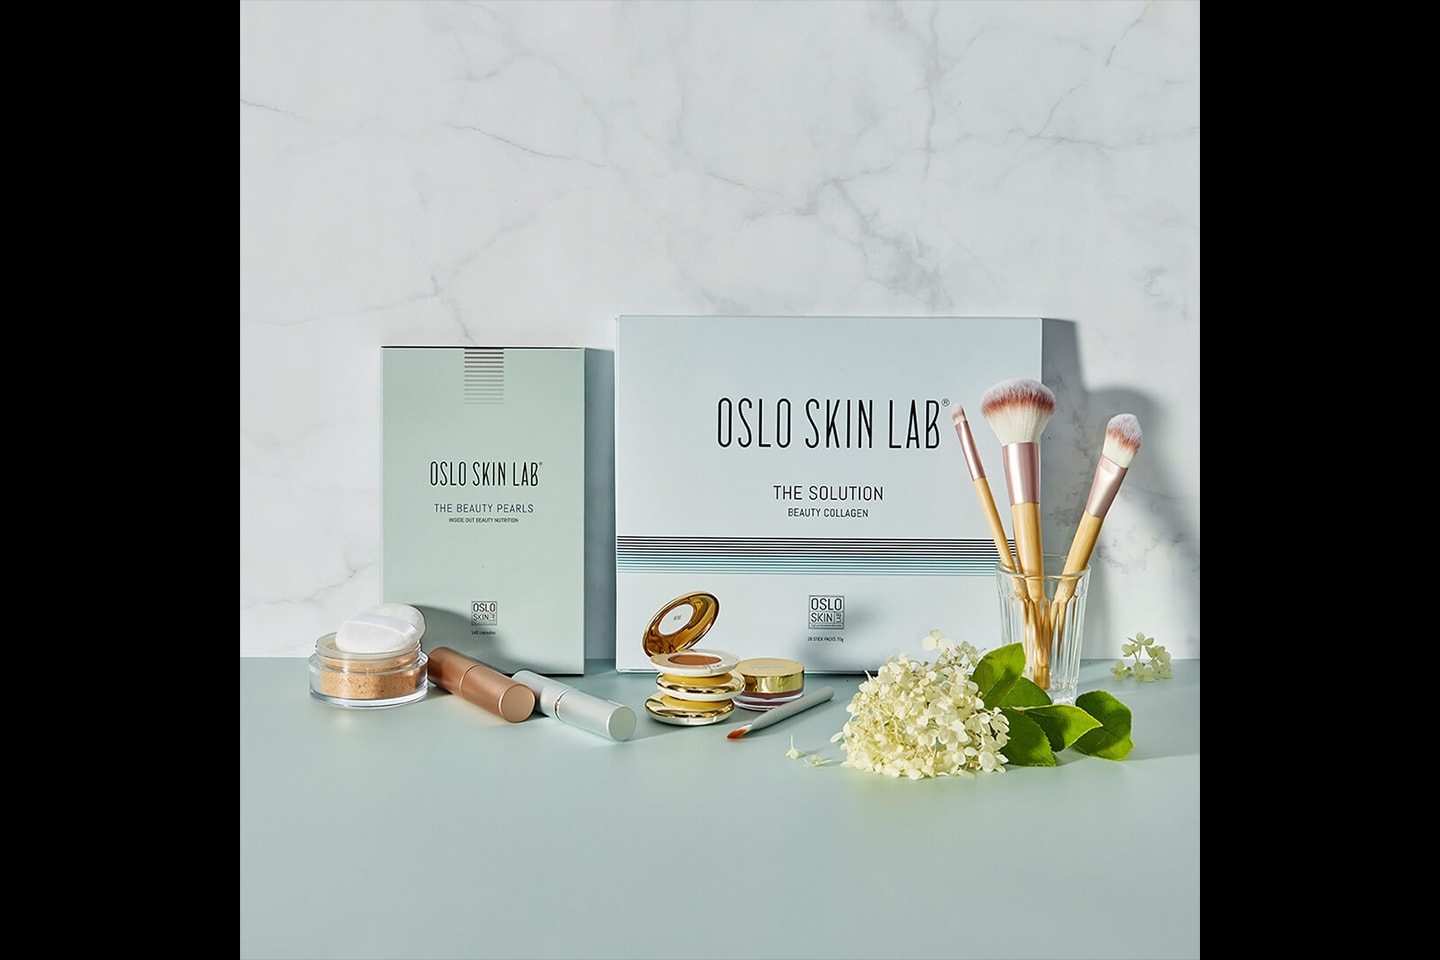 Oslo skin Lab - The Solution Beauty collagen (1 av 3) (2 av 3)